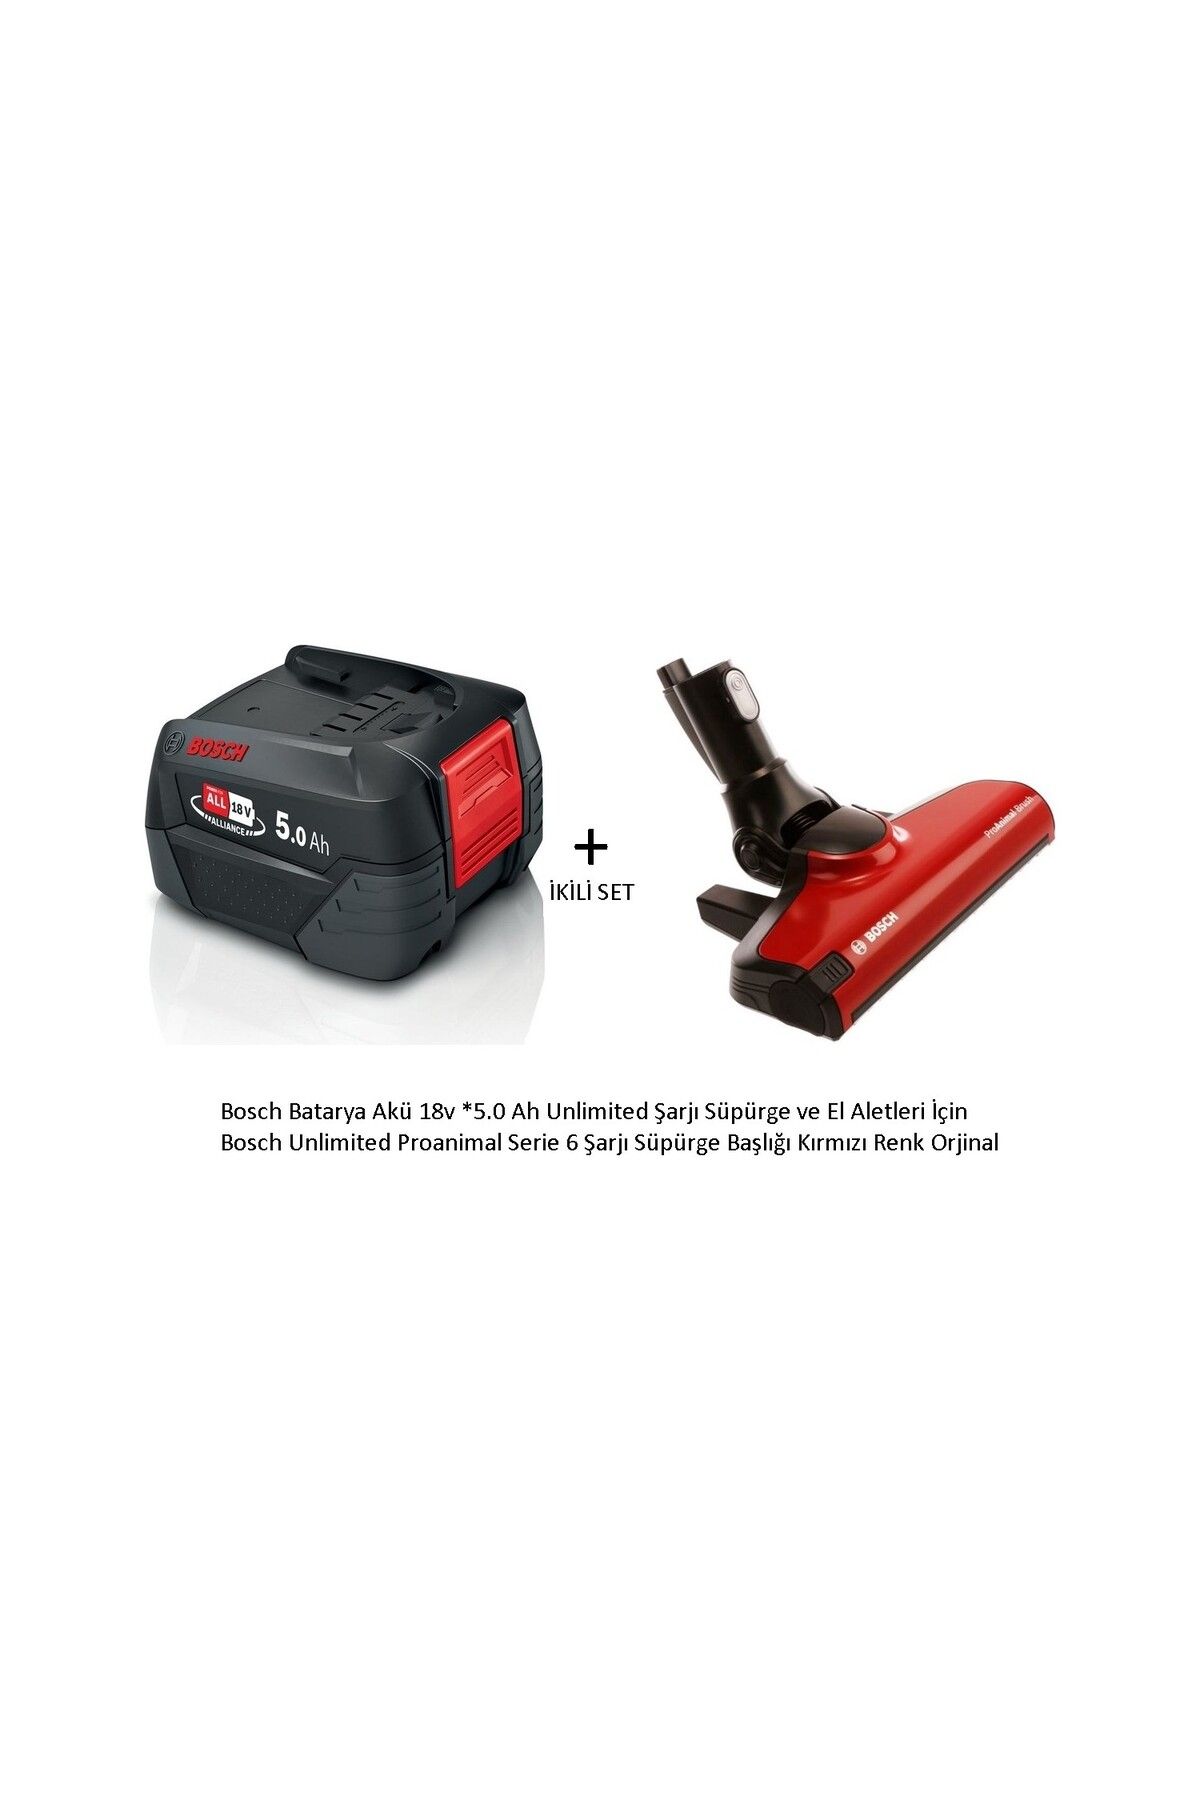 Bosch Unlimited Proanimal Serie 6 Şarjı Süpürge Başlığı Kırmızı VE Bosch Batarya Akü 18V *5.0 Ah